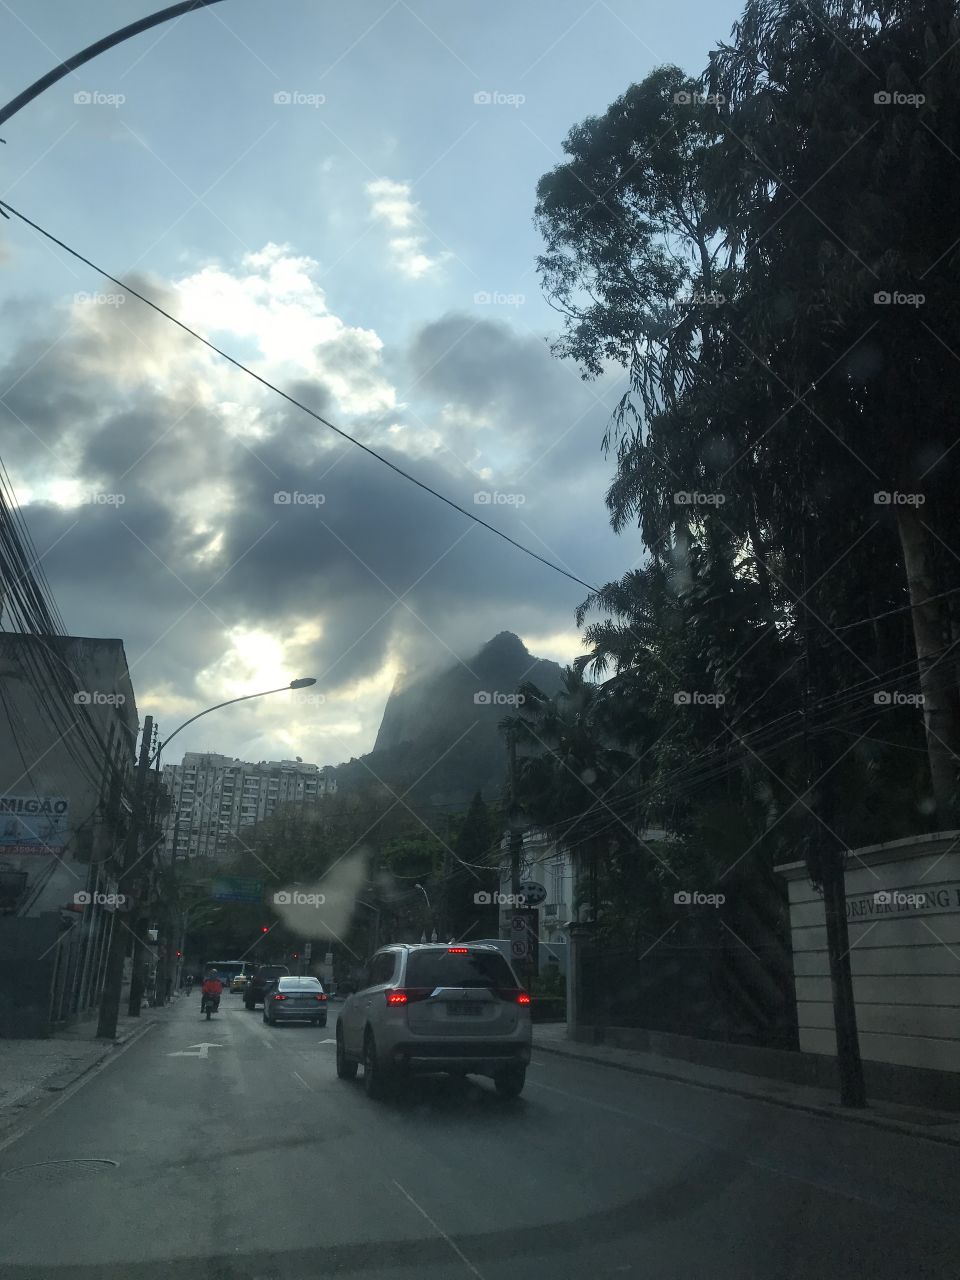 Rio de Janeiro!